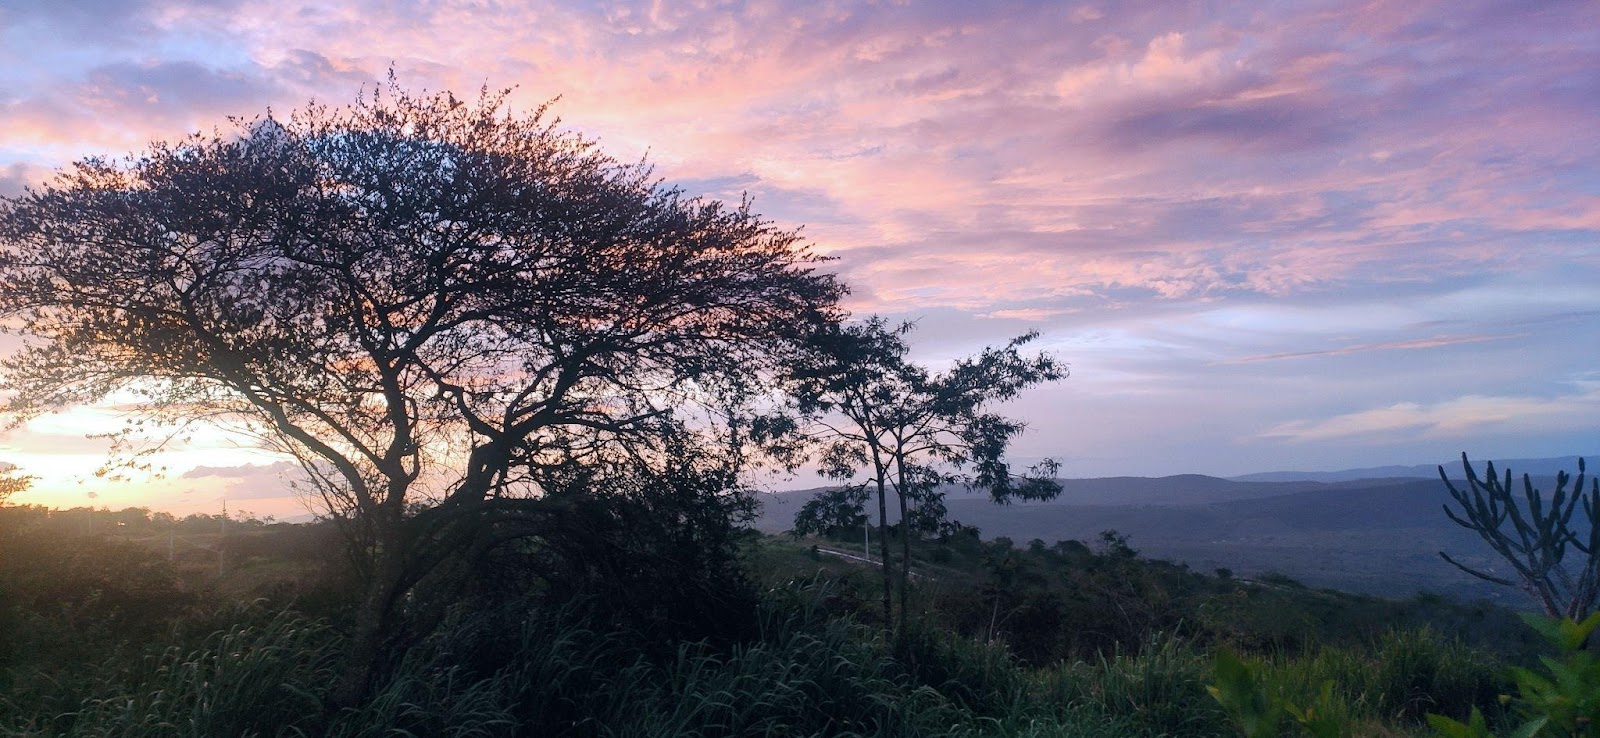 Paisagem rural de Gravatá, PE. Em destaque, aparece uma árvore no lado esquerdo da foto, de frente para a região montanhosa tomada pela vegetação nativa. O céu ao pôr do sol tem tons de rosa e azul